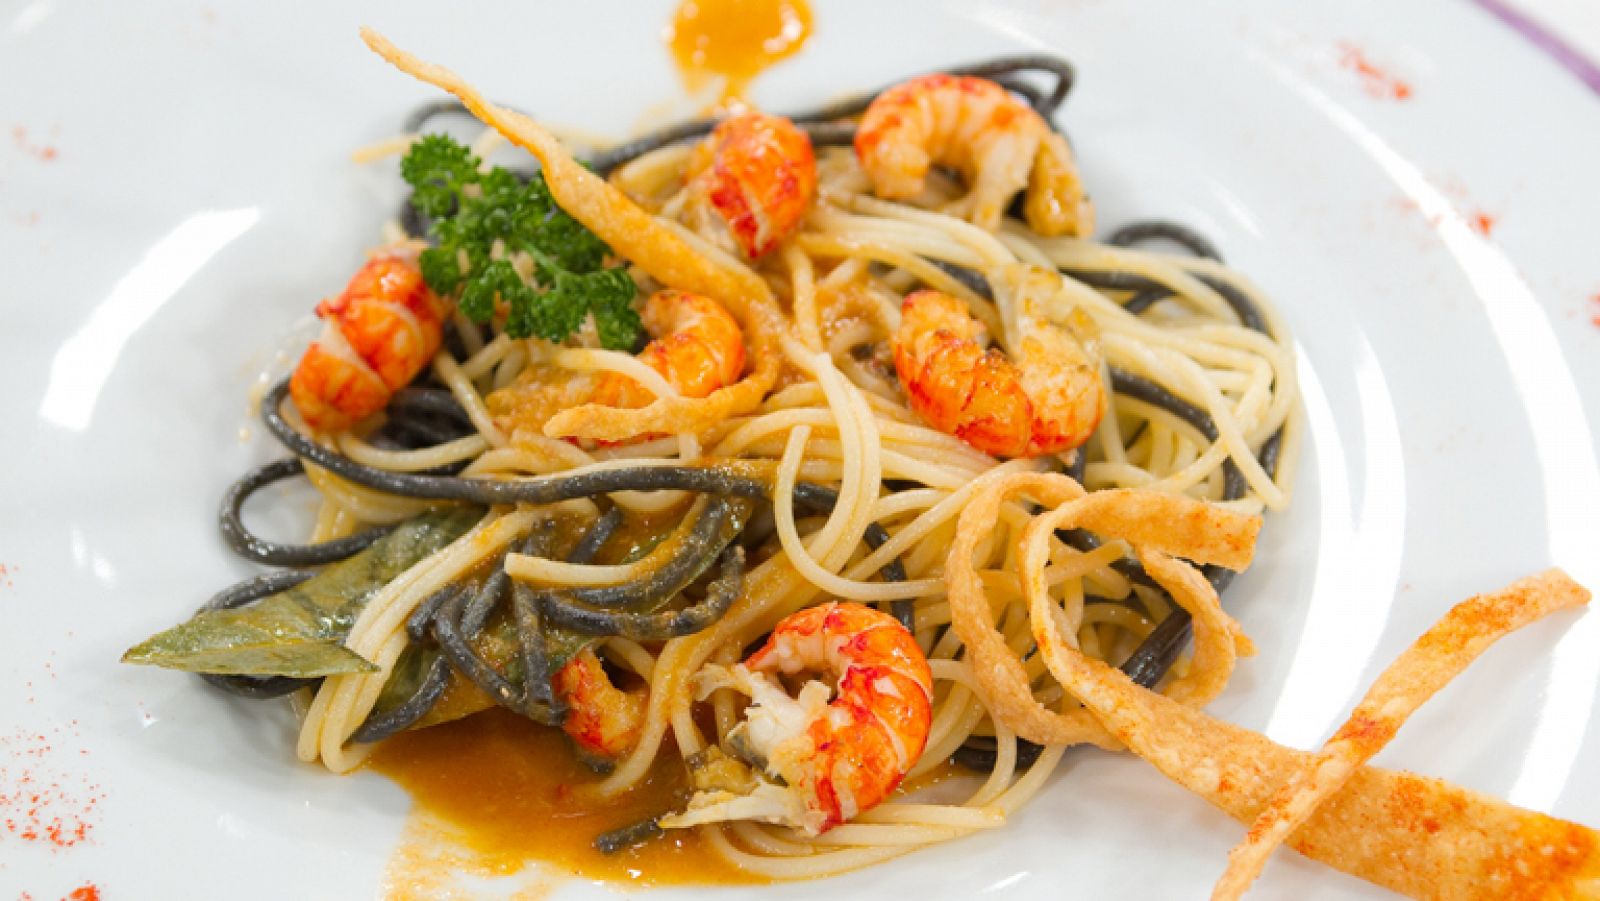  Saber Cocinar - Spaguetti con cangrejos y con tiras crujientes de trigo